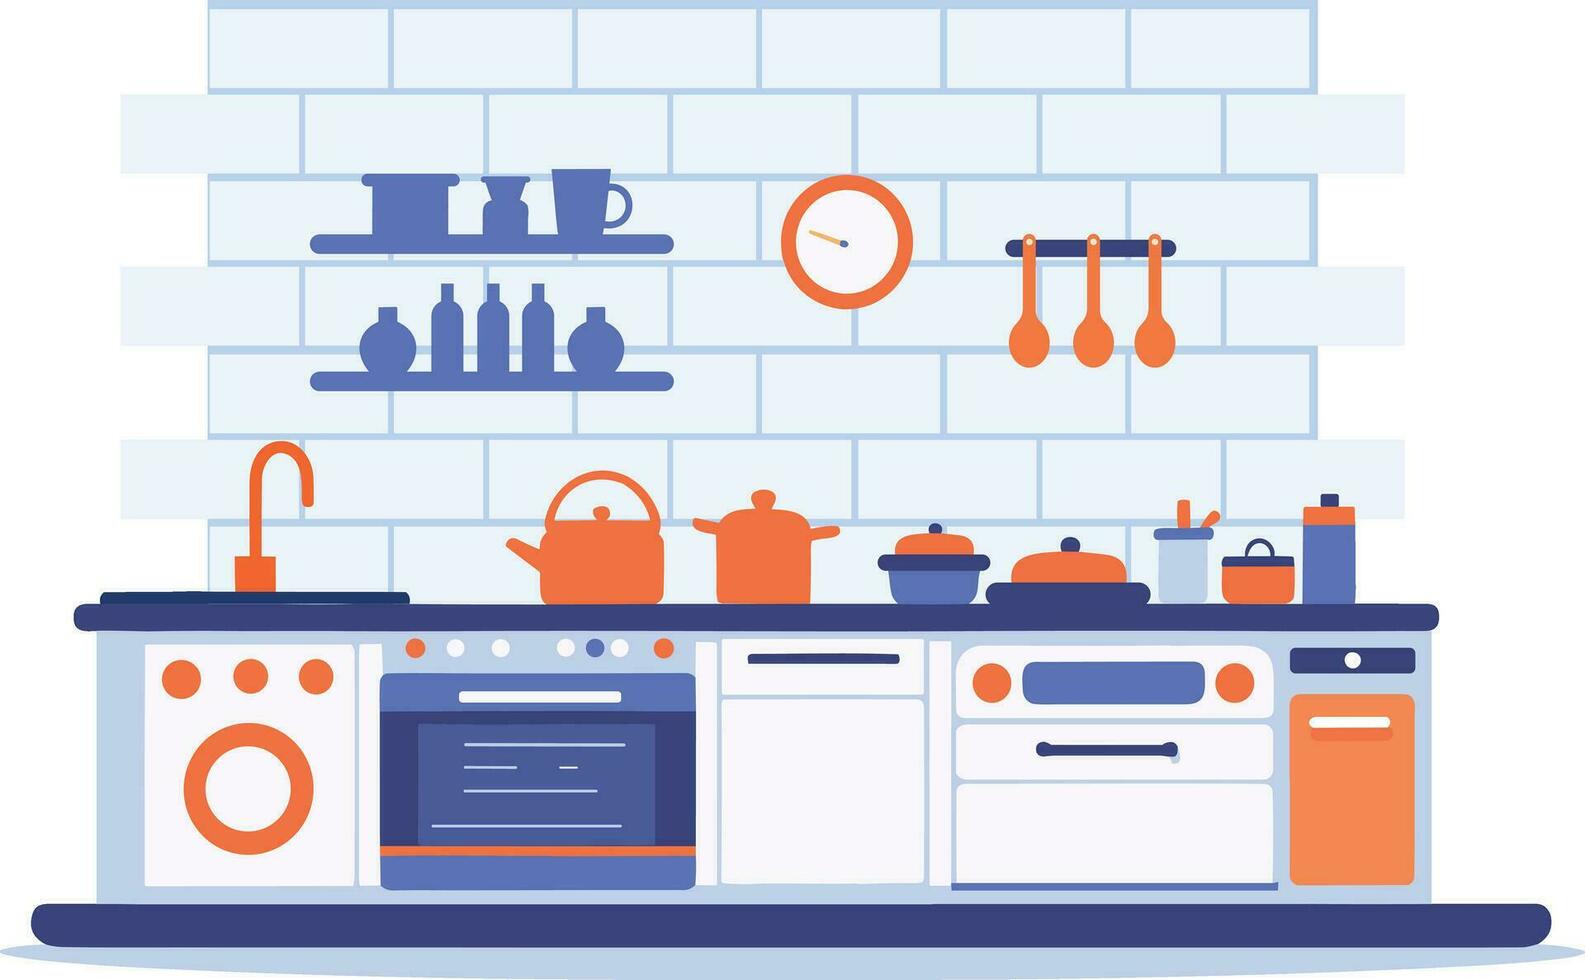 hand- getrokken keuken in minimalistische stijl in vlak stijl vector